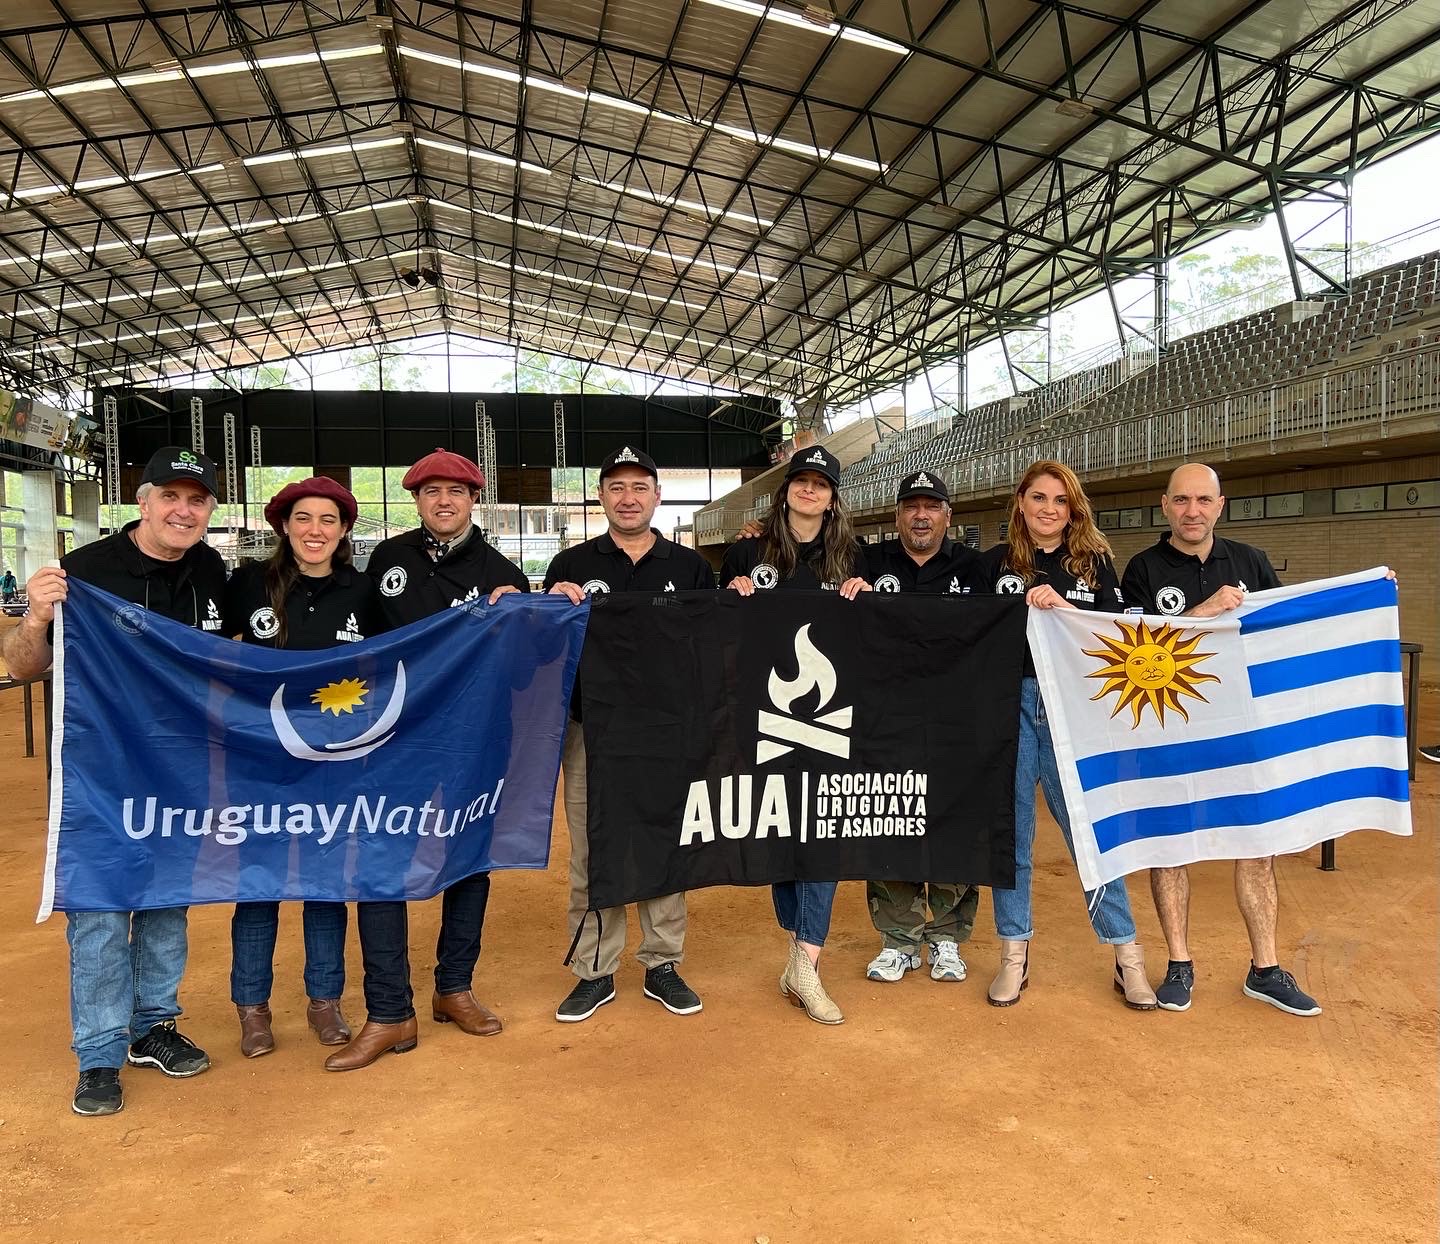 Asadores uruguayos se consagraron campeones mundiales en "Categoría Parrilla", en Medellín, Colombia